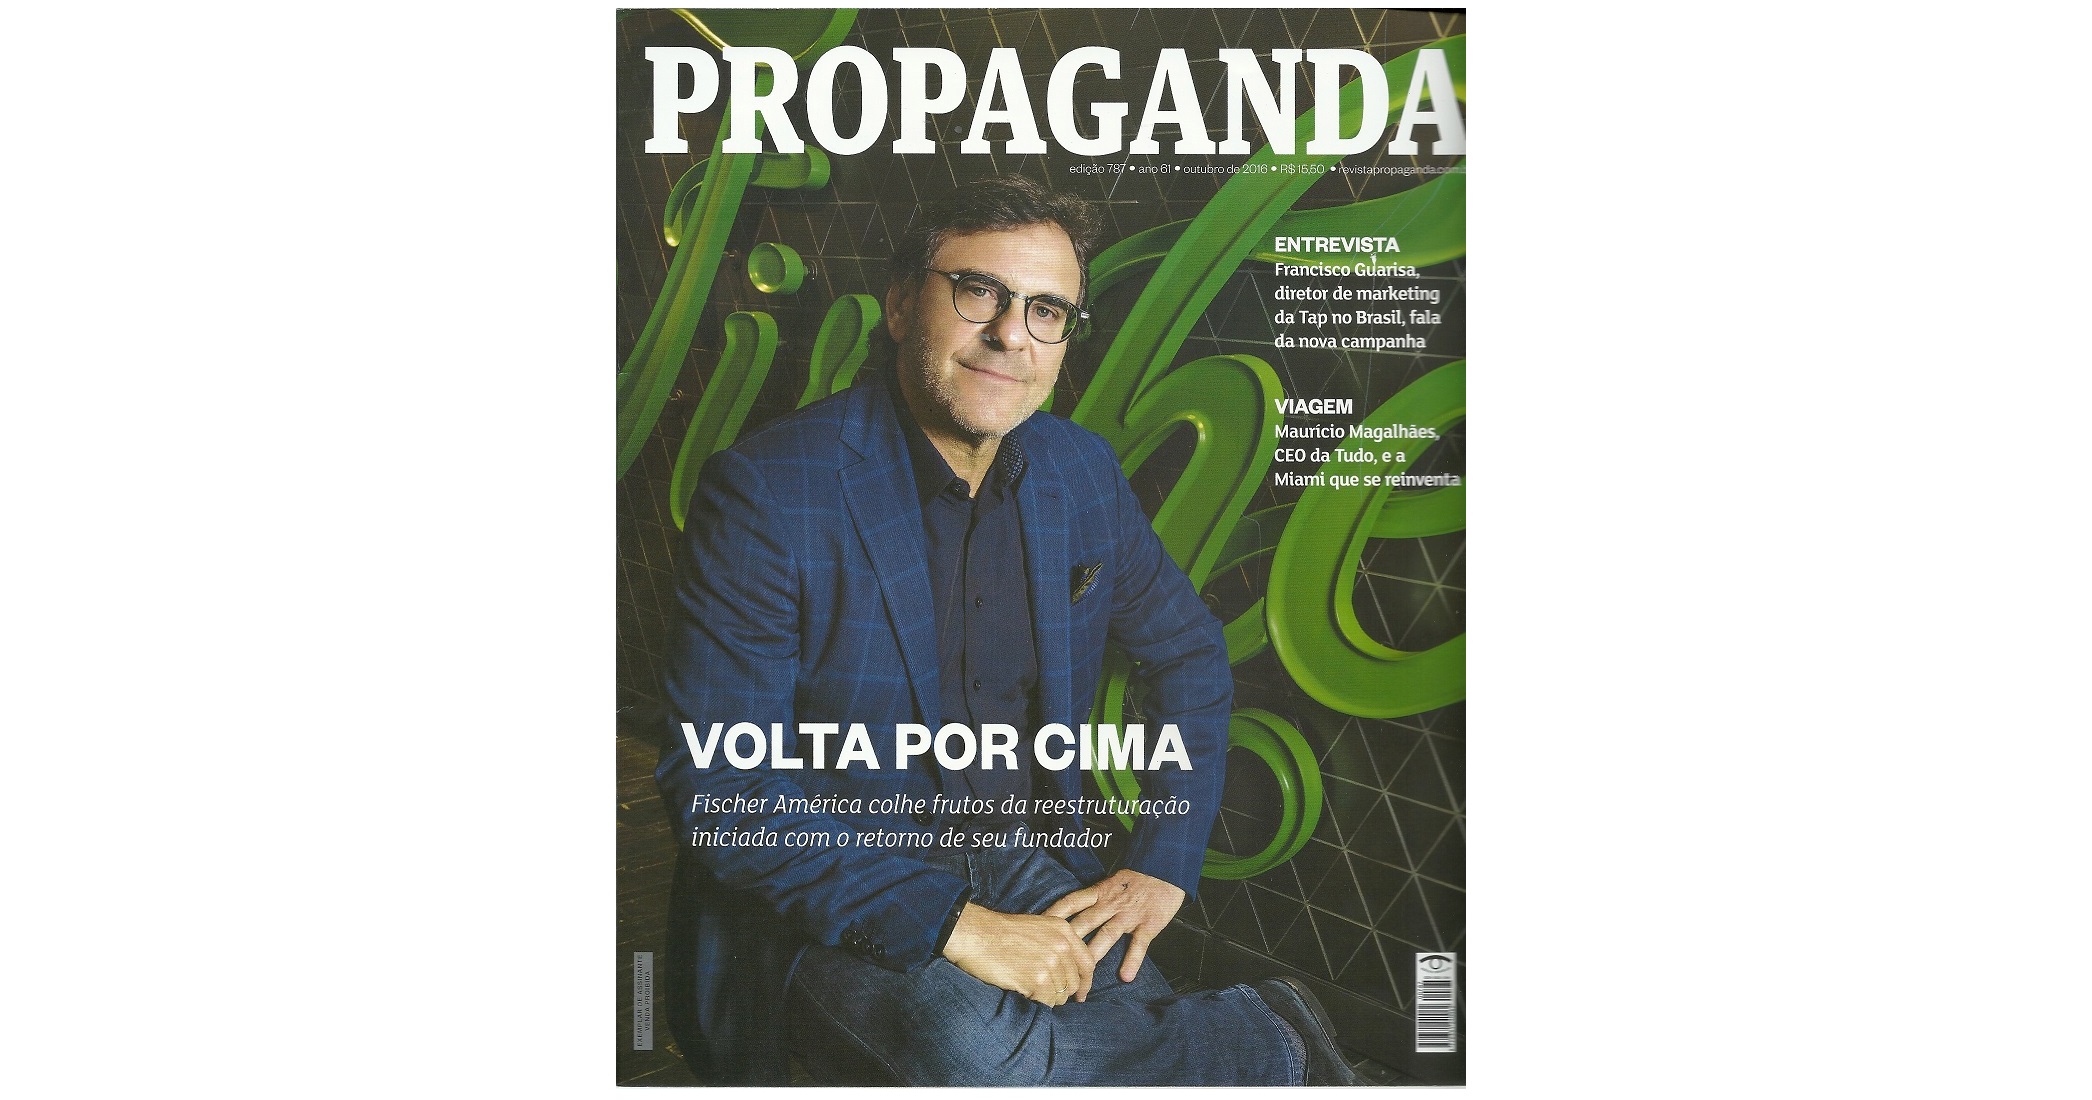 Fischer América é destaque na Revista Propaganda de Outubro